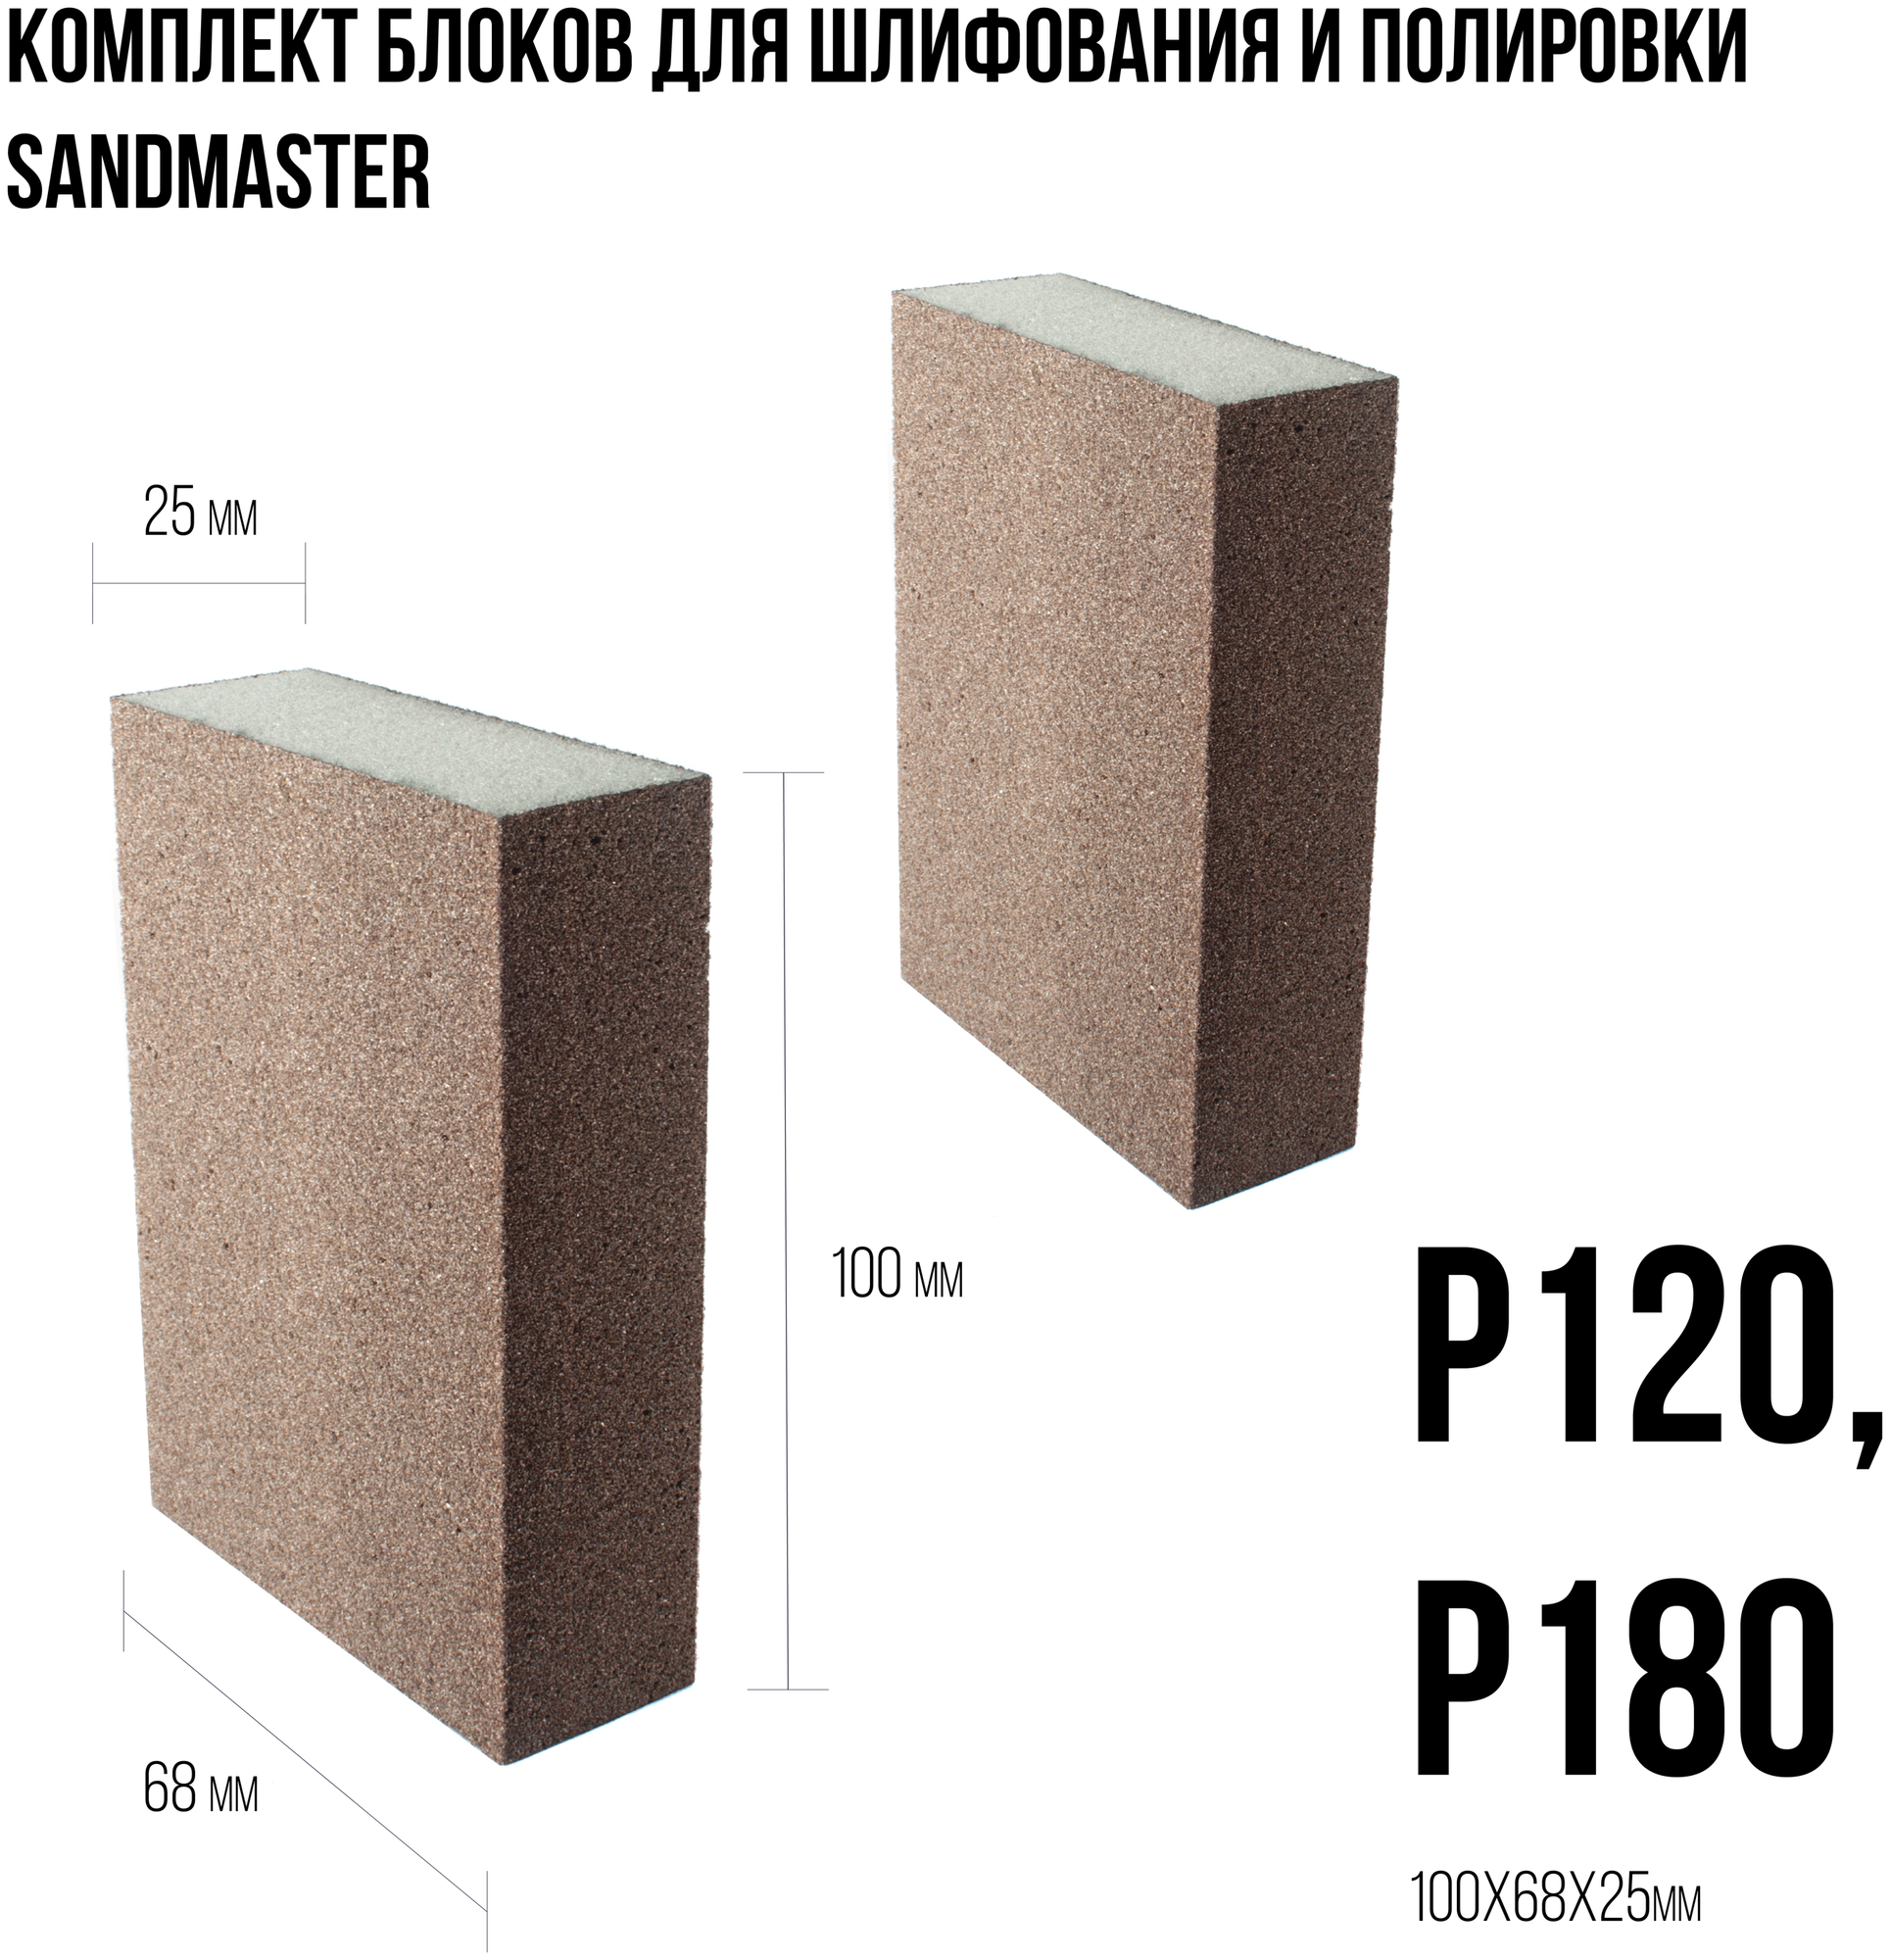 Комплект блоков для шлифования и полировки Sandmaster размером 100 x 68 x 25mm следующих градаций: Р120 Р180.